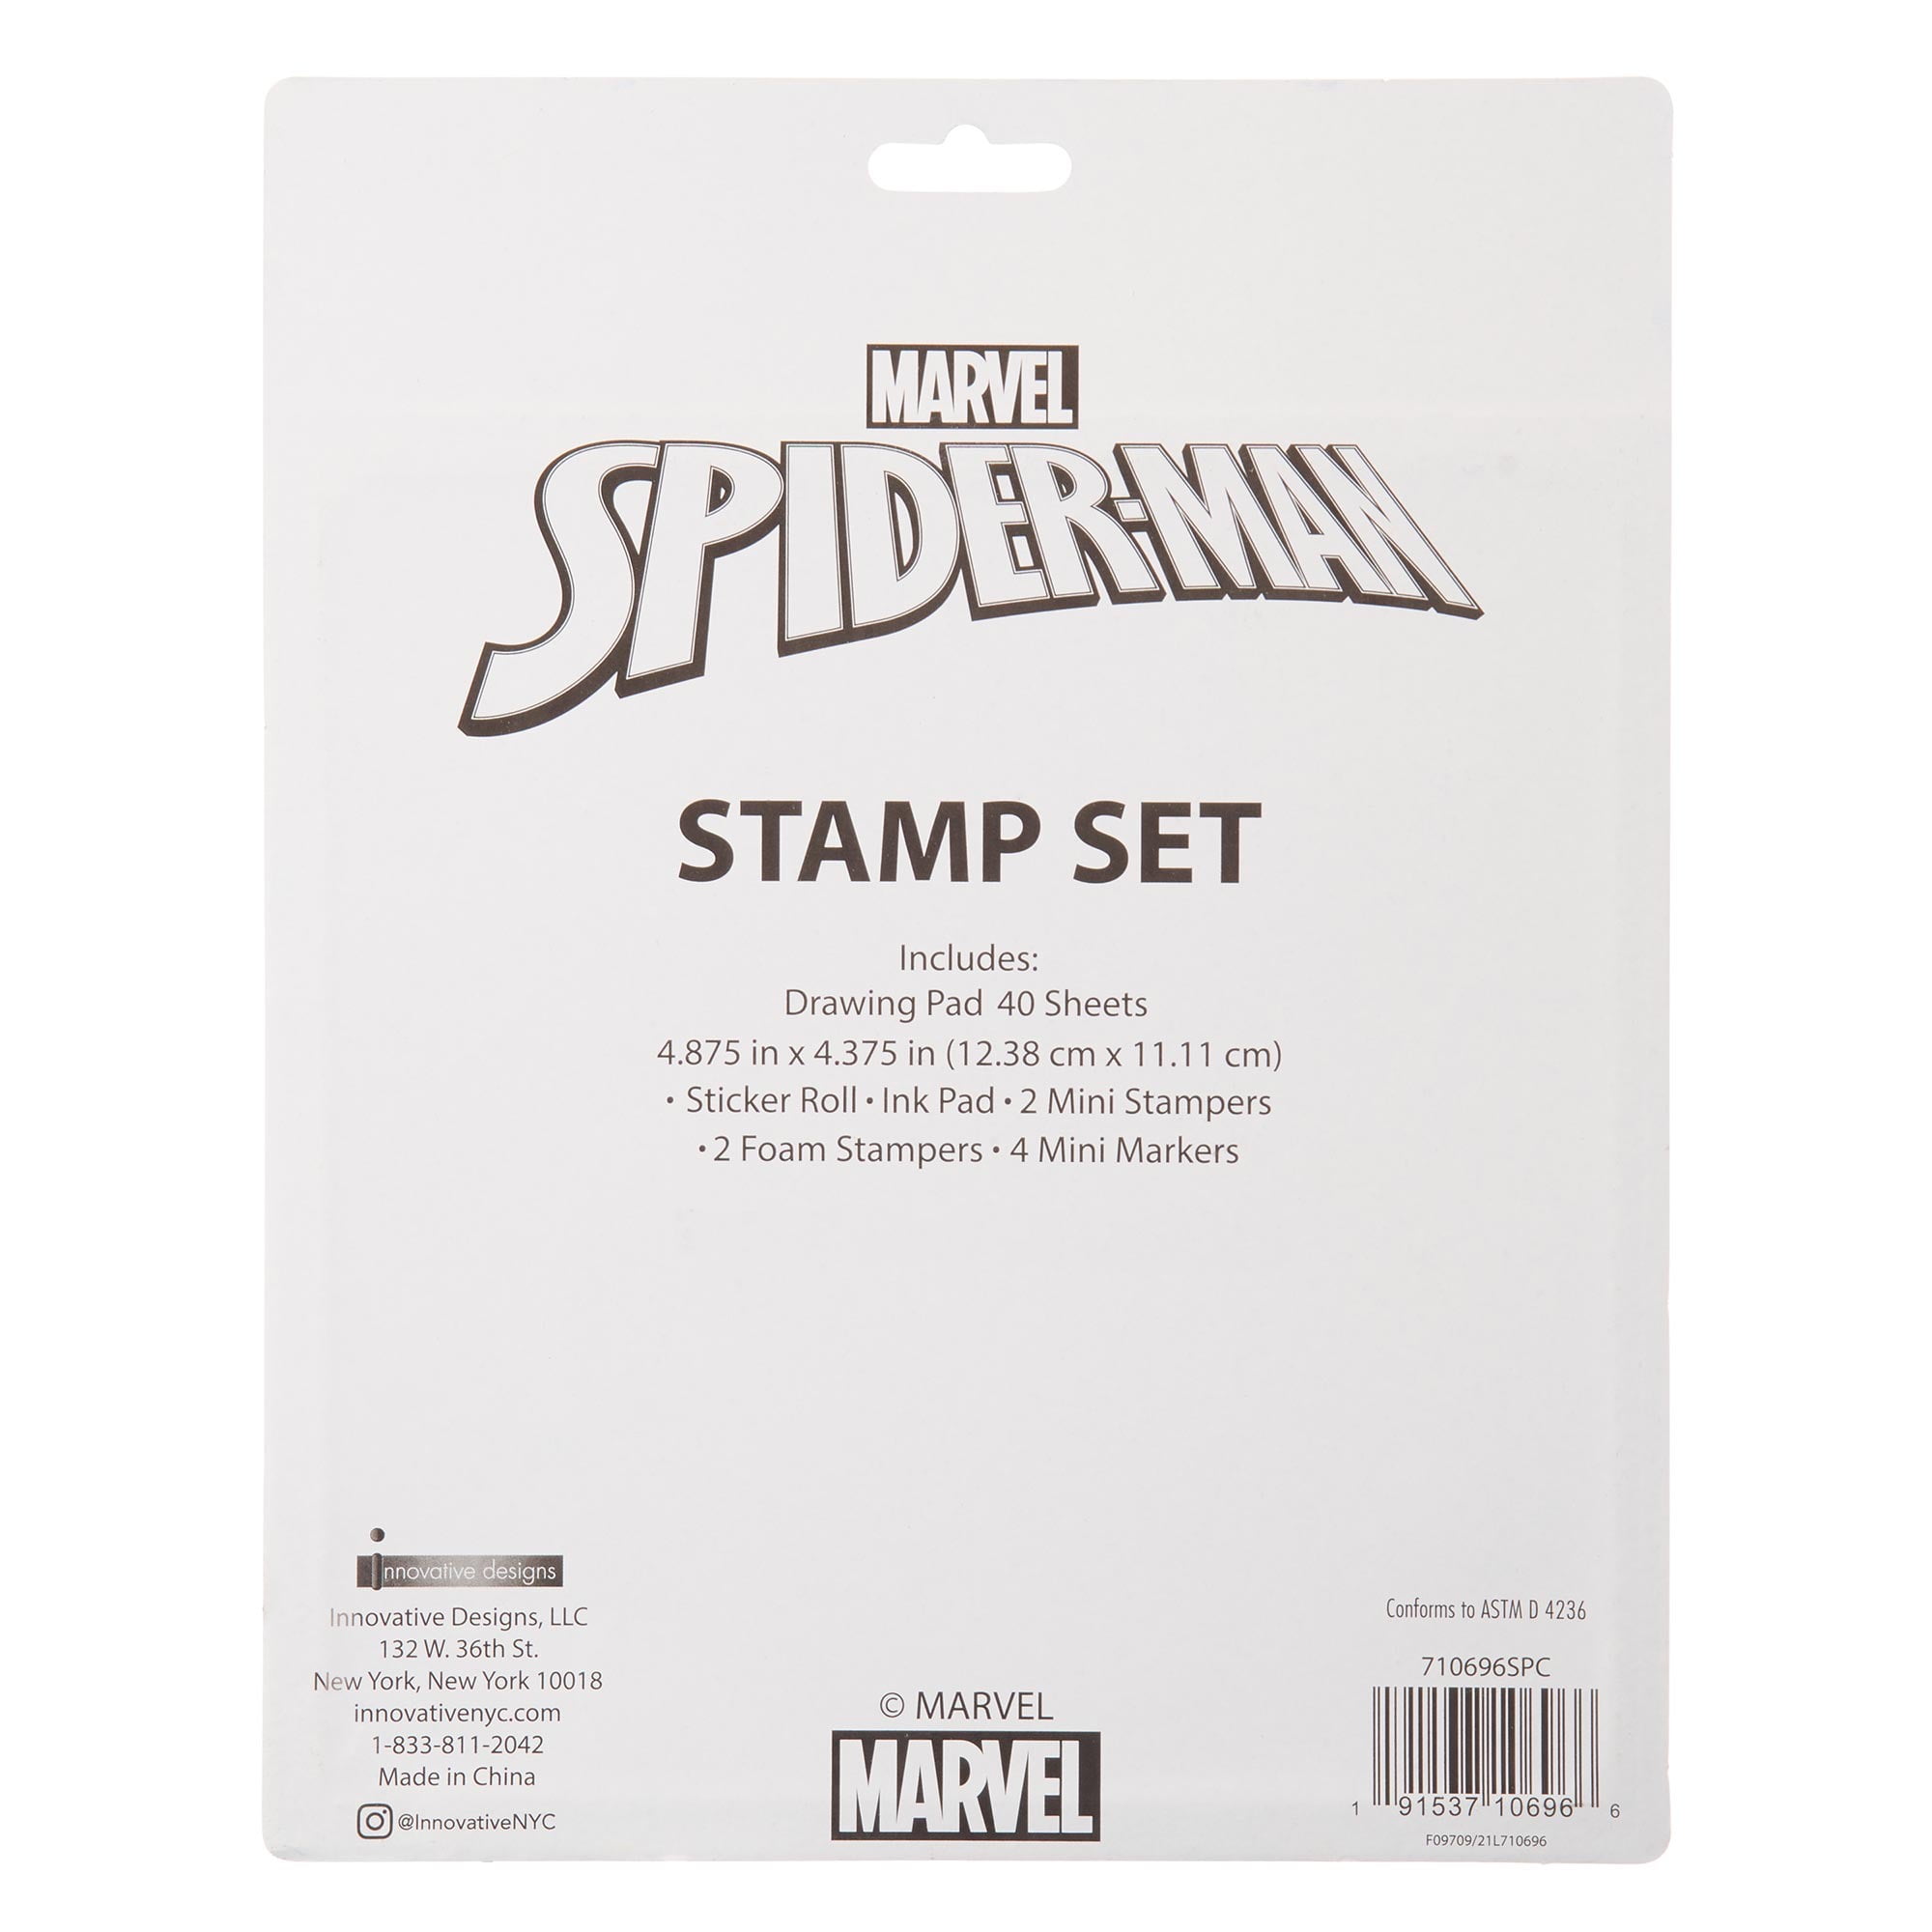 Réveil numérique carré Marvel Spiderman - Bleu - 8x8x8cm